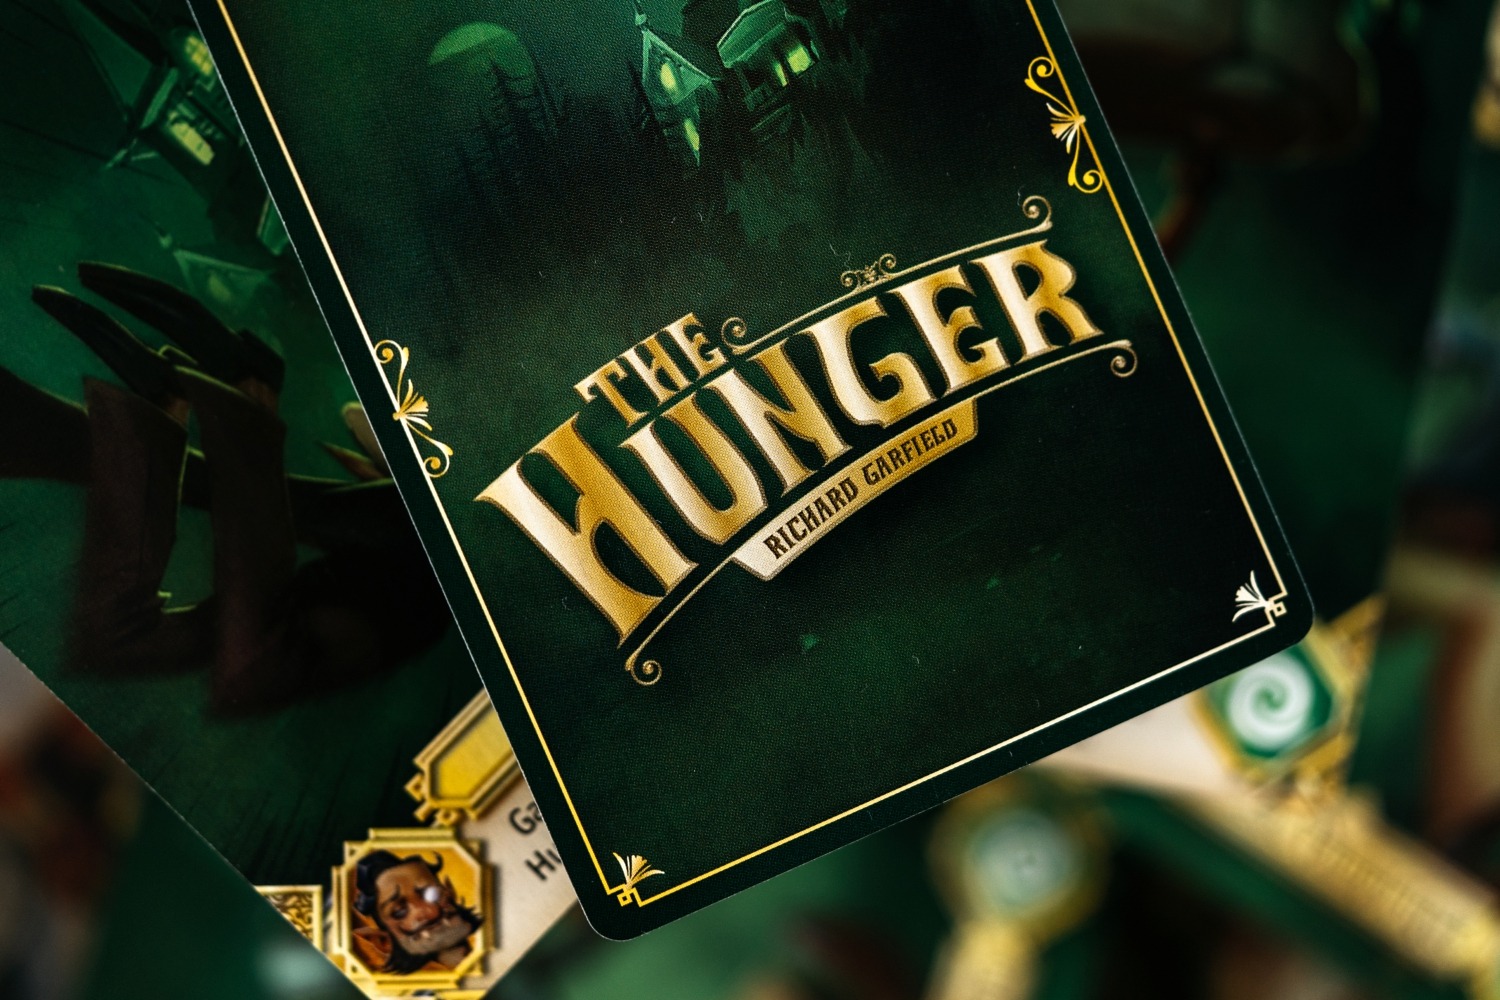 The Hunger origames jeu de société board game